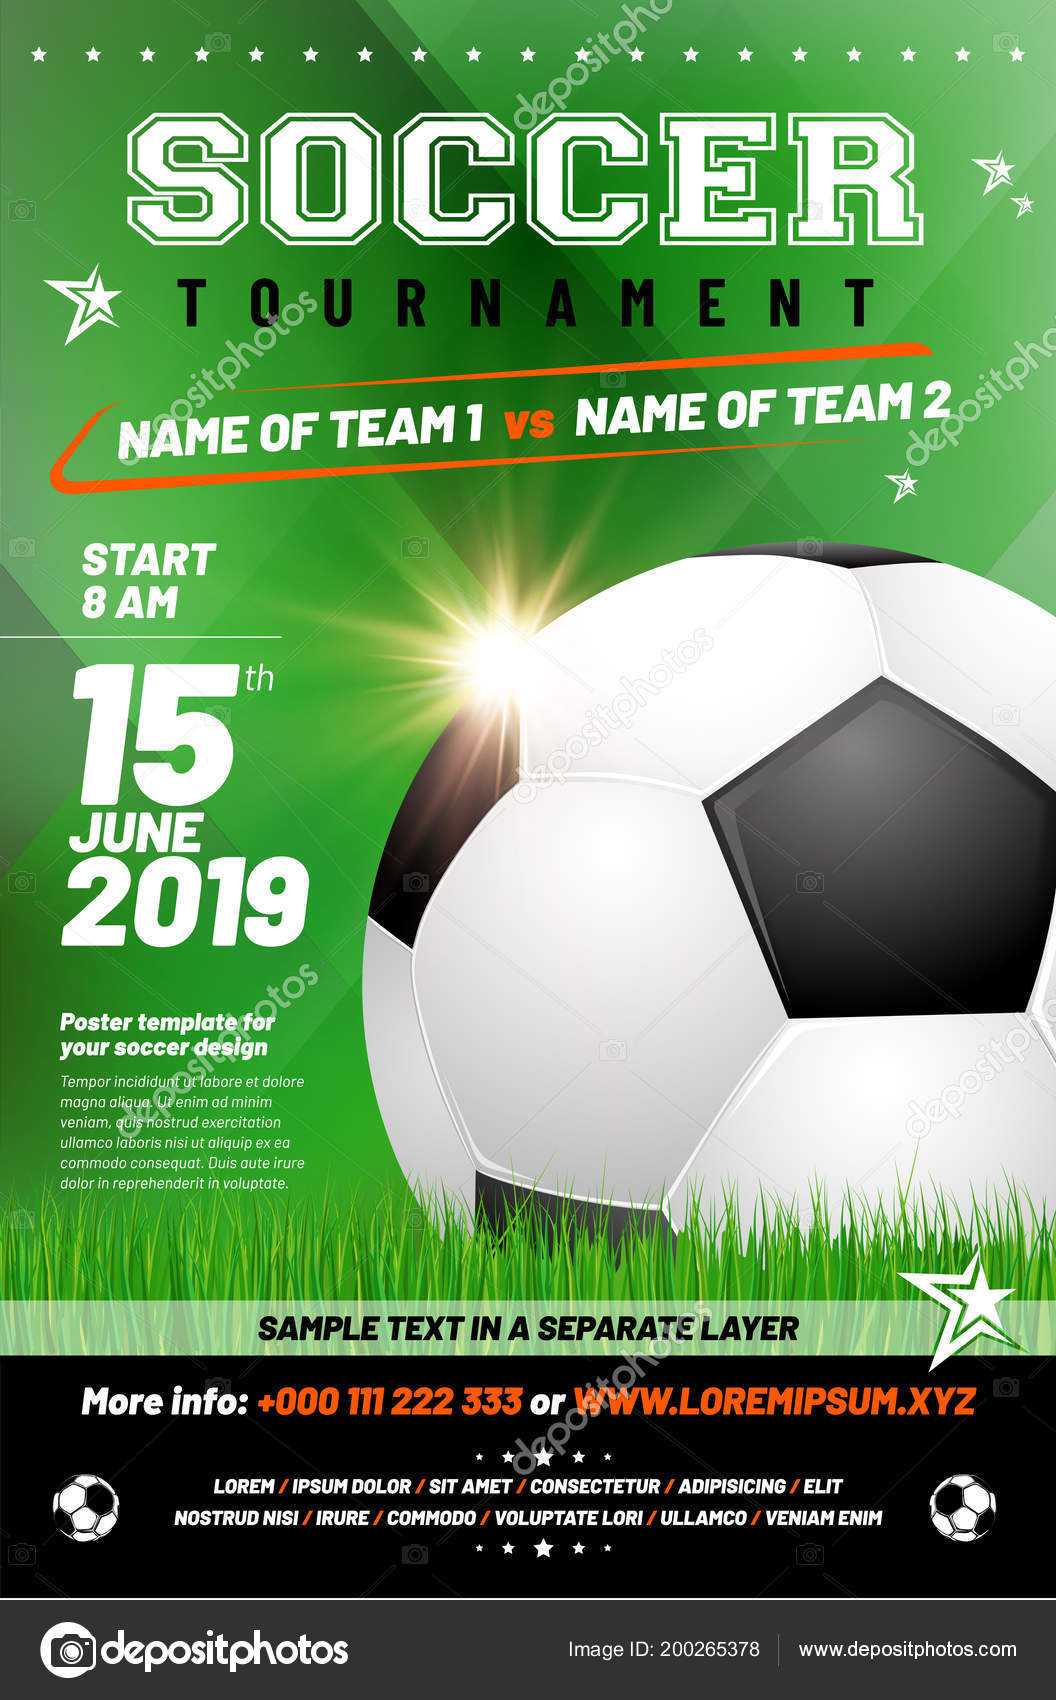 Sample Soccer Flyers | Soccer Tournament Poster Template For Football Tournament Flyer Template